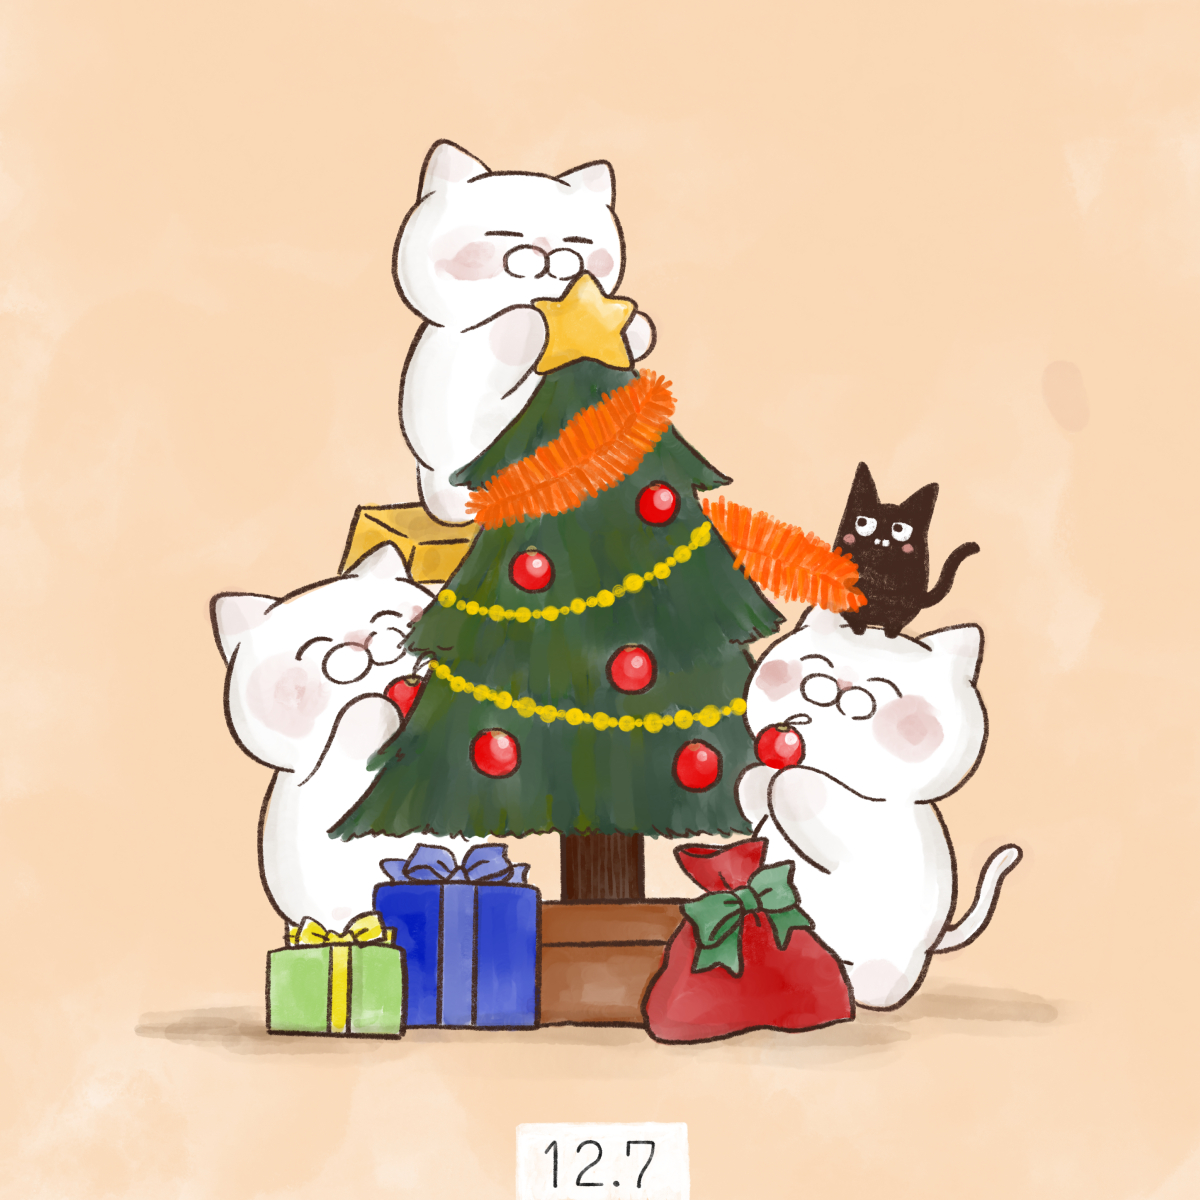 「12月7日【クリスマスツリーの日】1886年12月7日に、横浜で外国人船員のため」|大和猫のイラスト